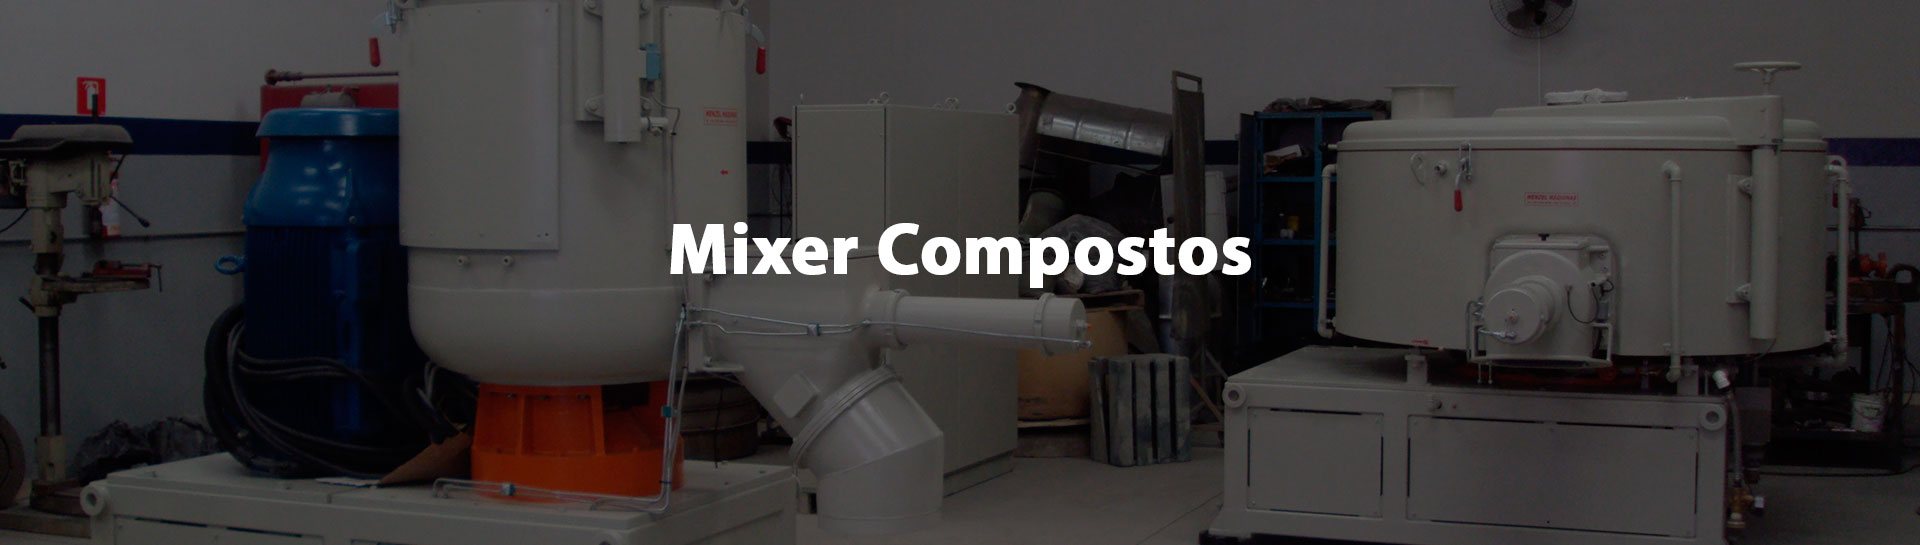 Mixer para compostos